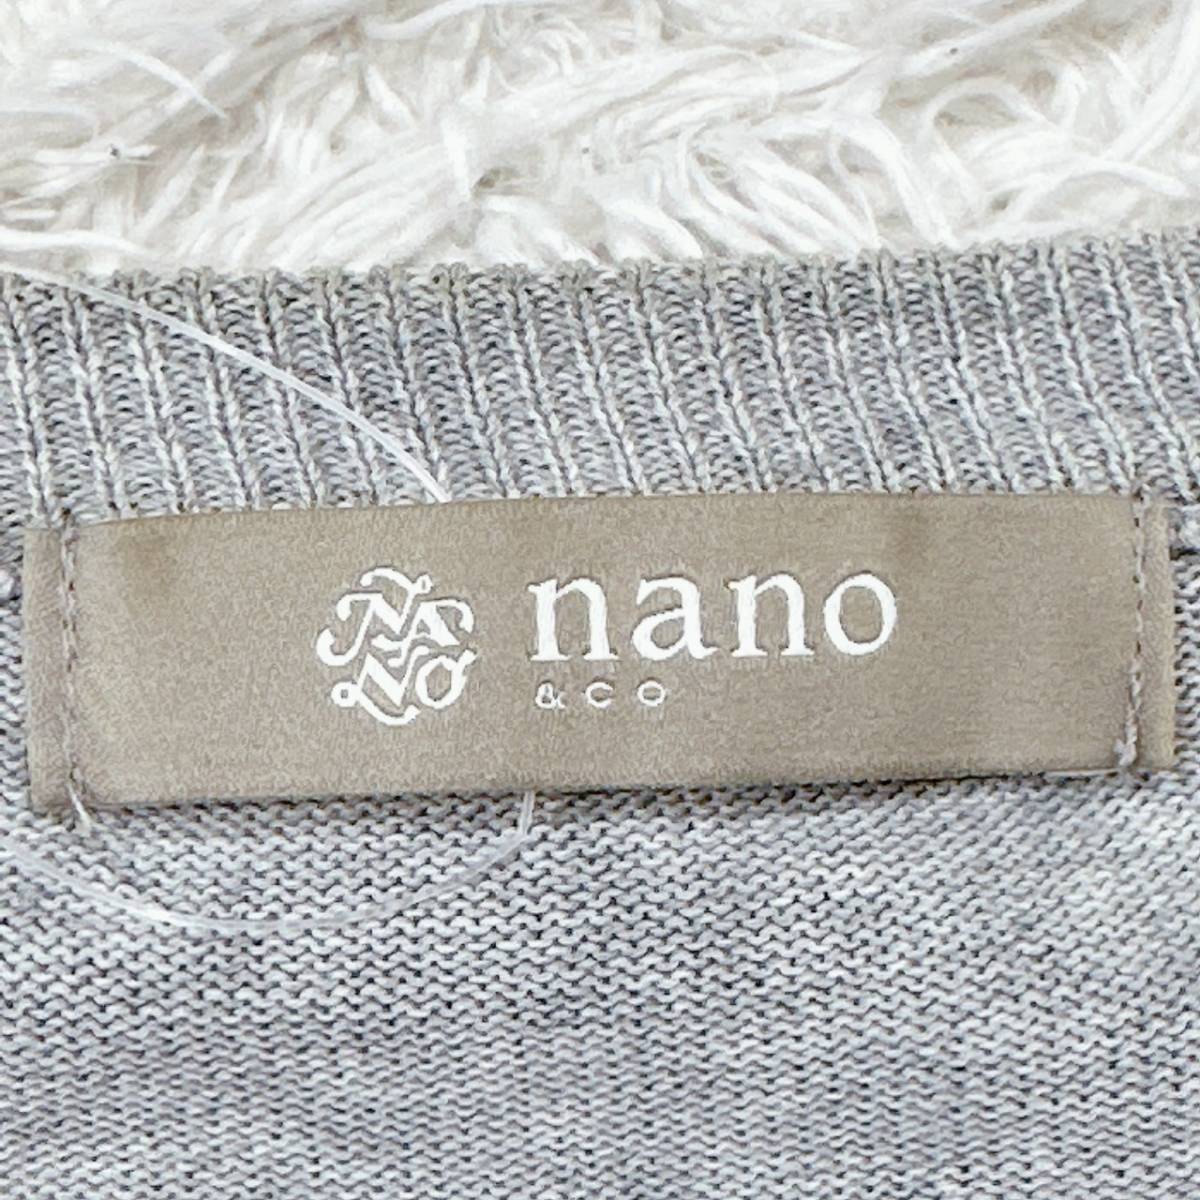 メンズS nano カーディガン セーター 普段着 重ね着 長袖 オールシーズン シンプル 無地 ライトグレー 灰色 ナノ 【14748】